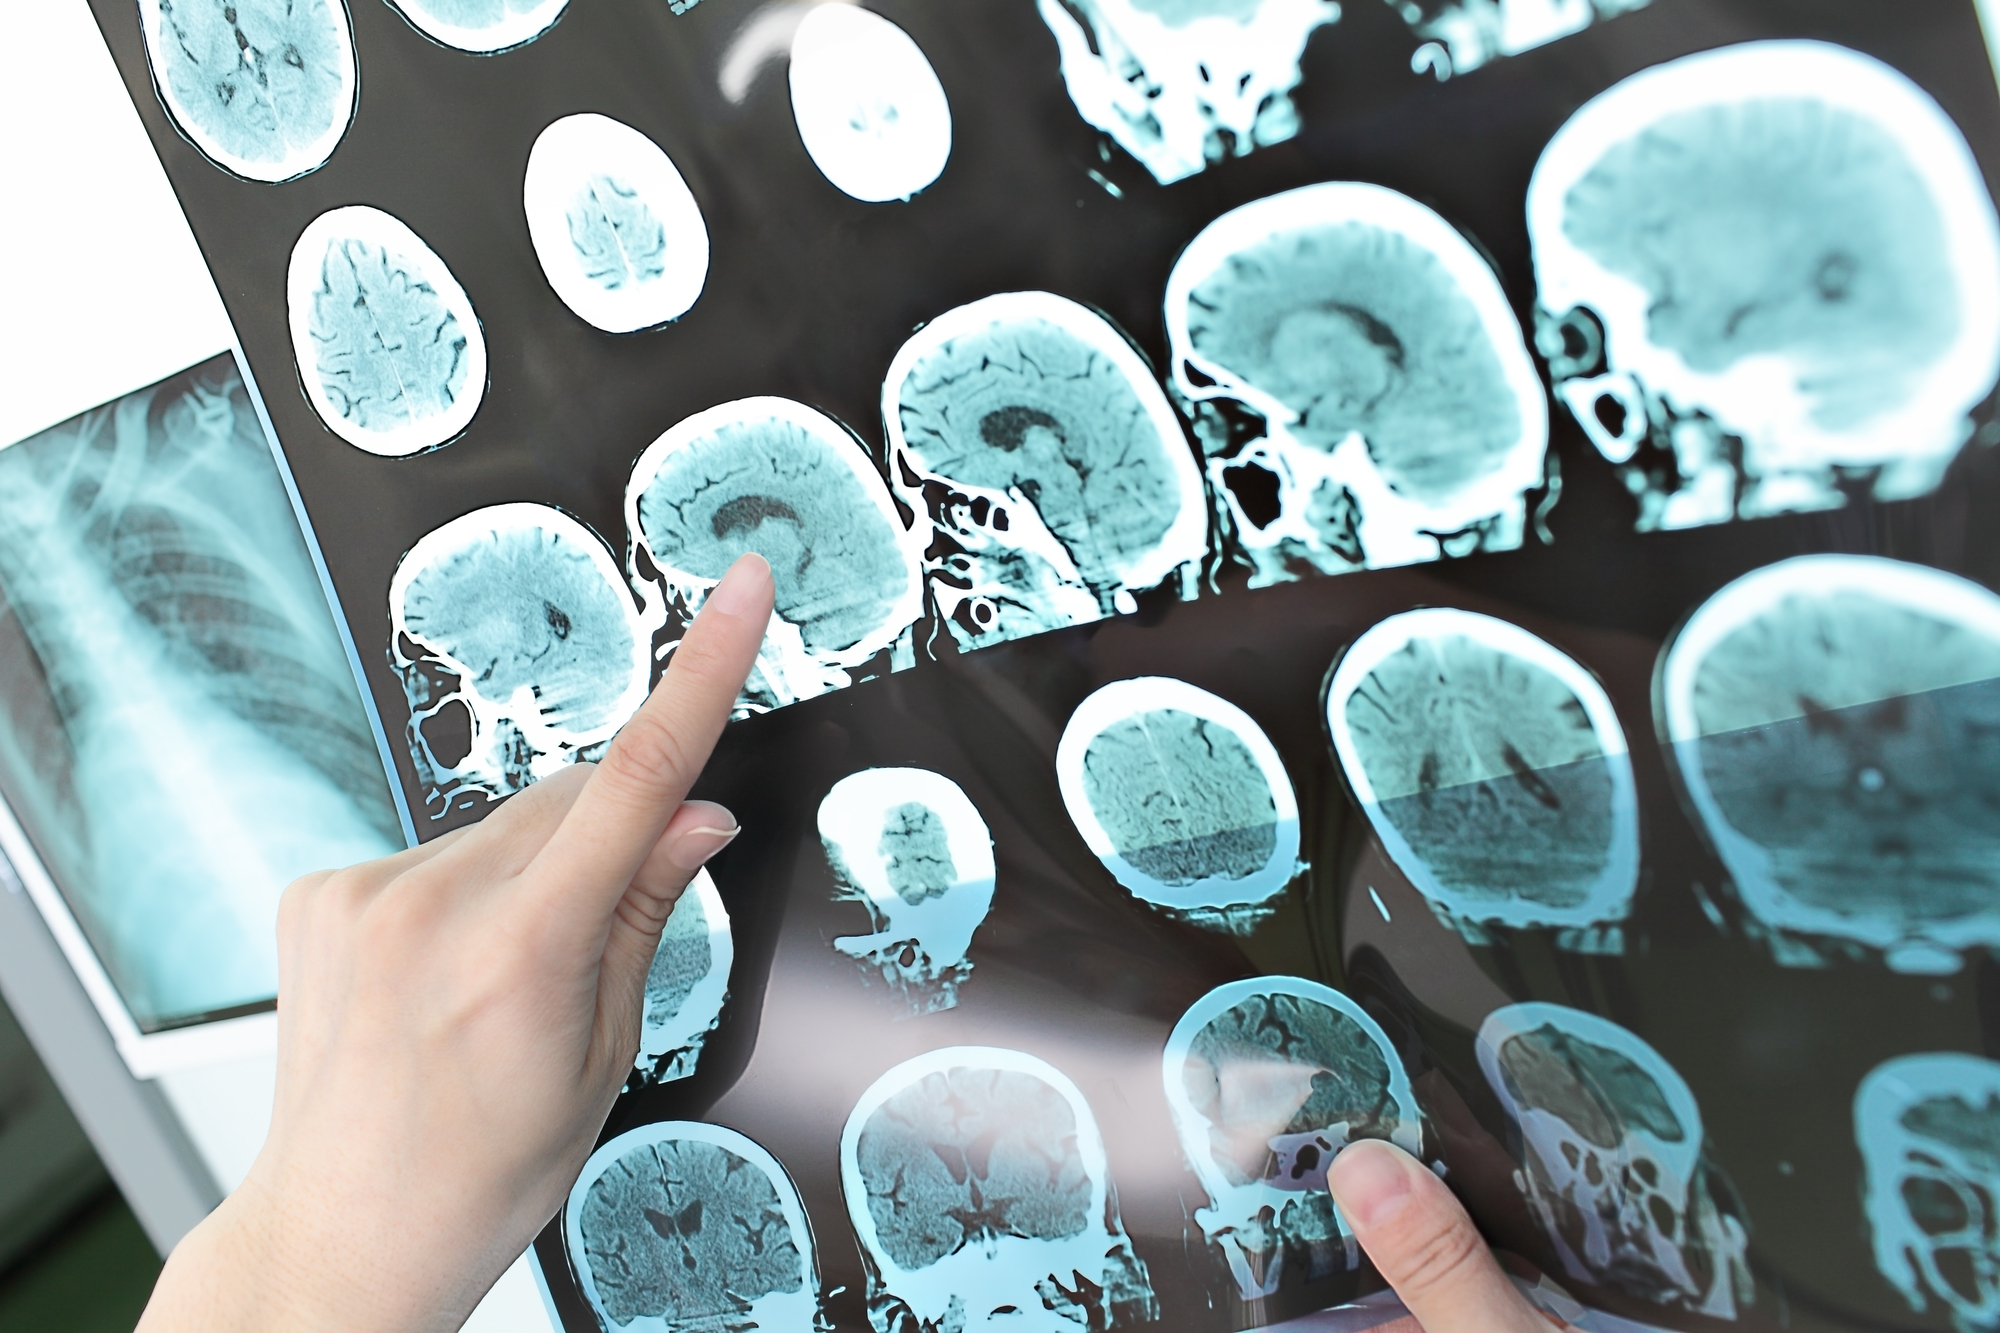 Científicos chinos reportan primer caso de Alzheimer en joven de 19 años